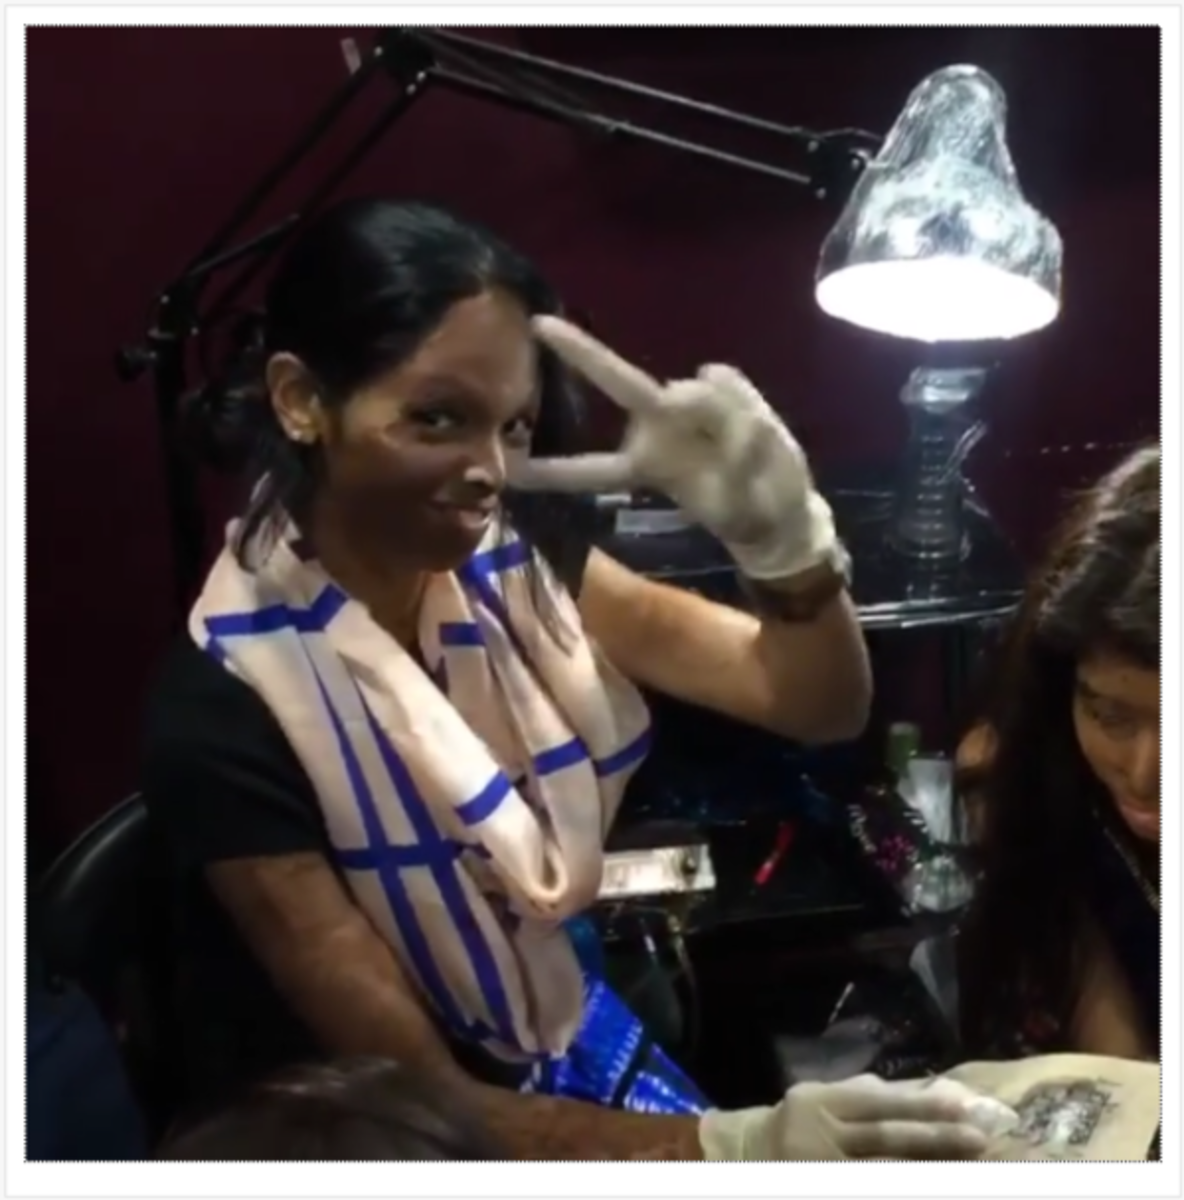 Εκτός από την προπόνησή της, η Laxmi μπόρεσε να βρει λίγο χρόνο για να κάνει τατουάζ η ίδια. Είχε τατουάζ τη λέξη Freedom στο αντιβράχιο της. Είπε σε δημοσιογράφο του bbc: «Κάνω ένα τατουάζ με νόημα που συνδέεται με την ψυχή μου. Είναι συμβολικό για την ελευθερία γιατί θέλω να δείξω στην κοινωνία τι είναι η ελεύθερη βούληση και τι σημαίνει για εμάς η γνώμη. Αυτό το εργαστήριο καριέρας τατουάζ είναι σύμφωνο με αυτό που προσπαθούμε και ως εκ τούτου είμαστε στην ευχάριστη θέση να συνεργαστούμε ».